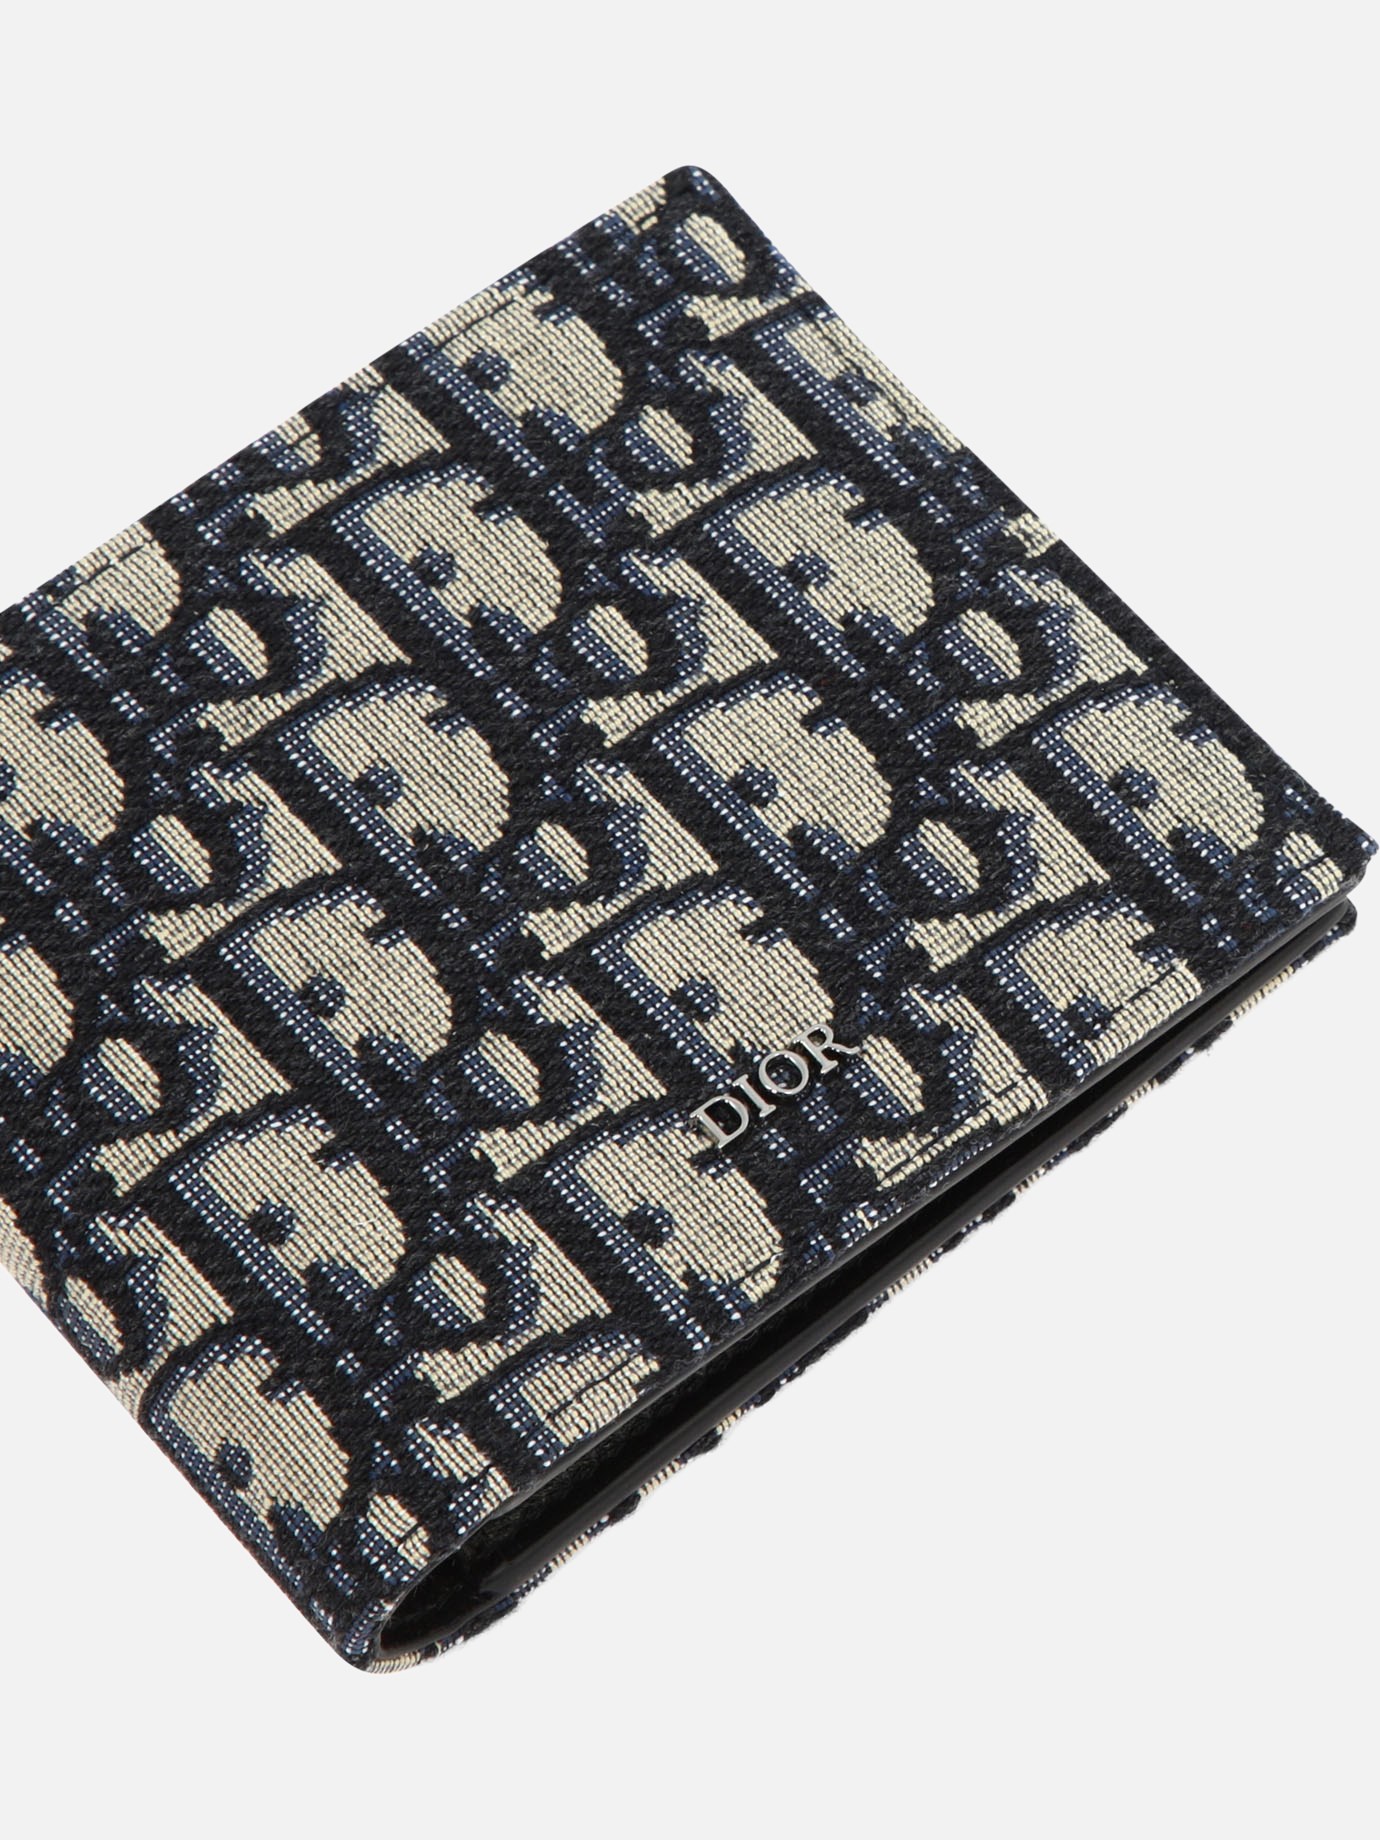  Dior Oblique  wallet by Dior